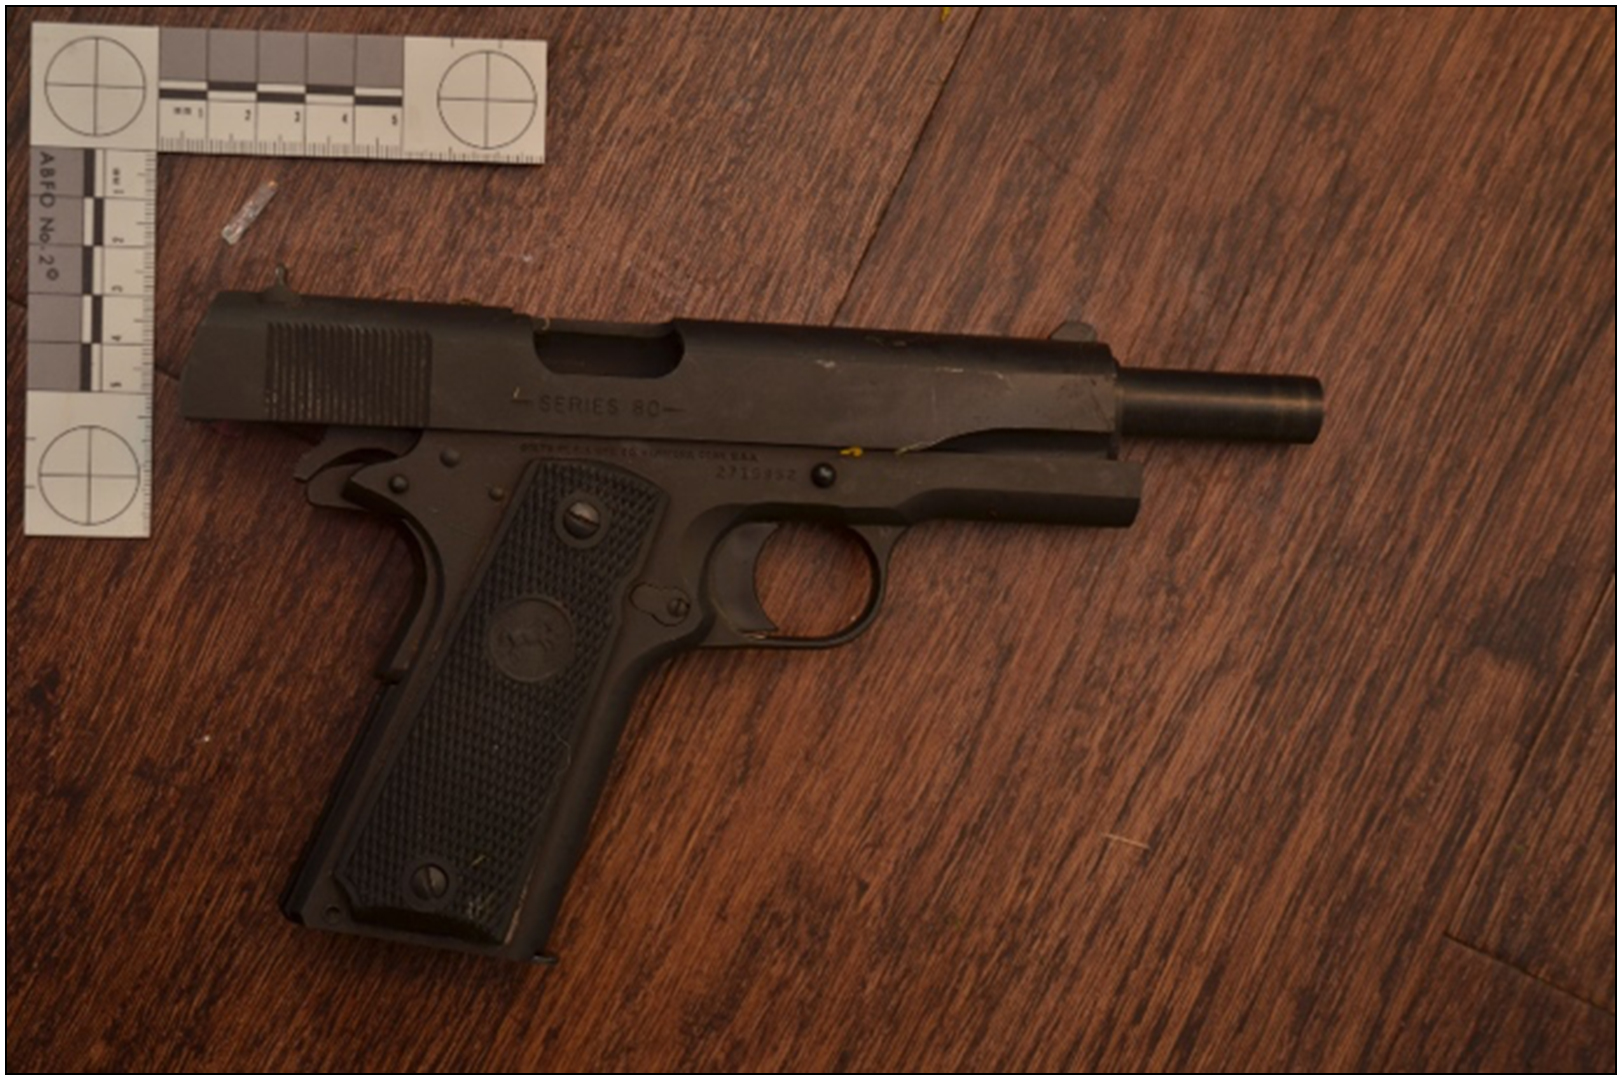 Colt de calibre de calibre 45 trouvée